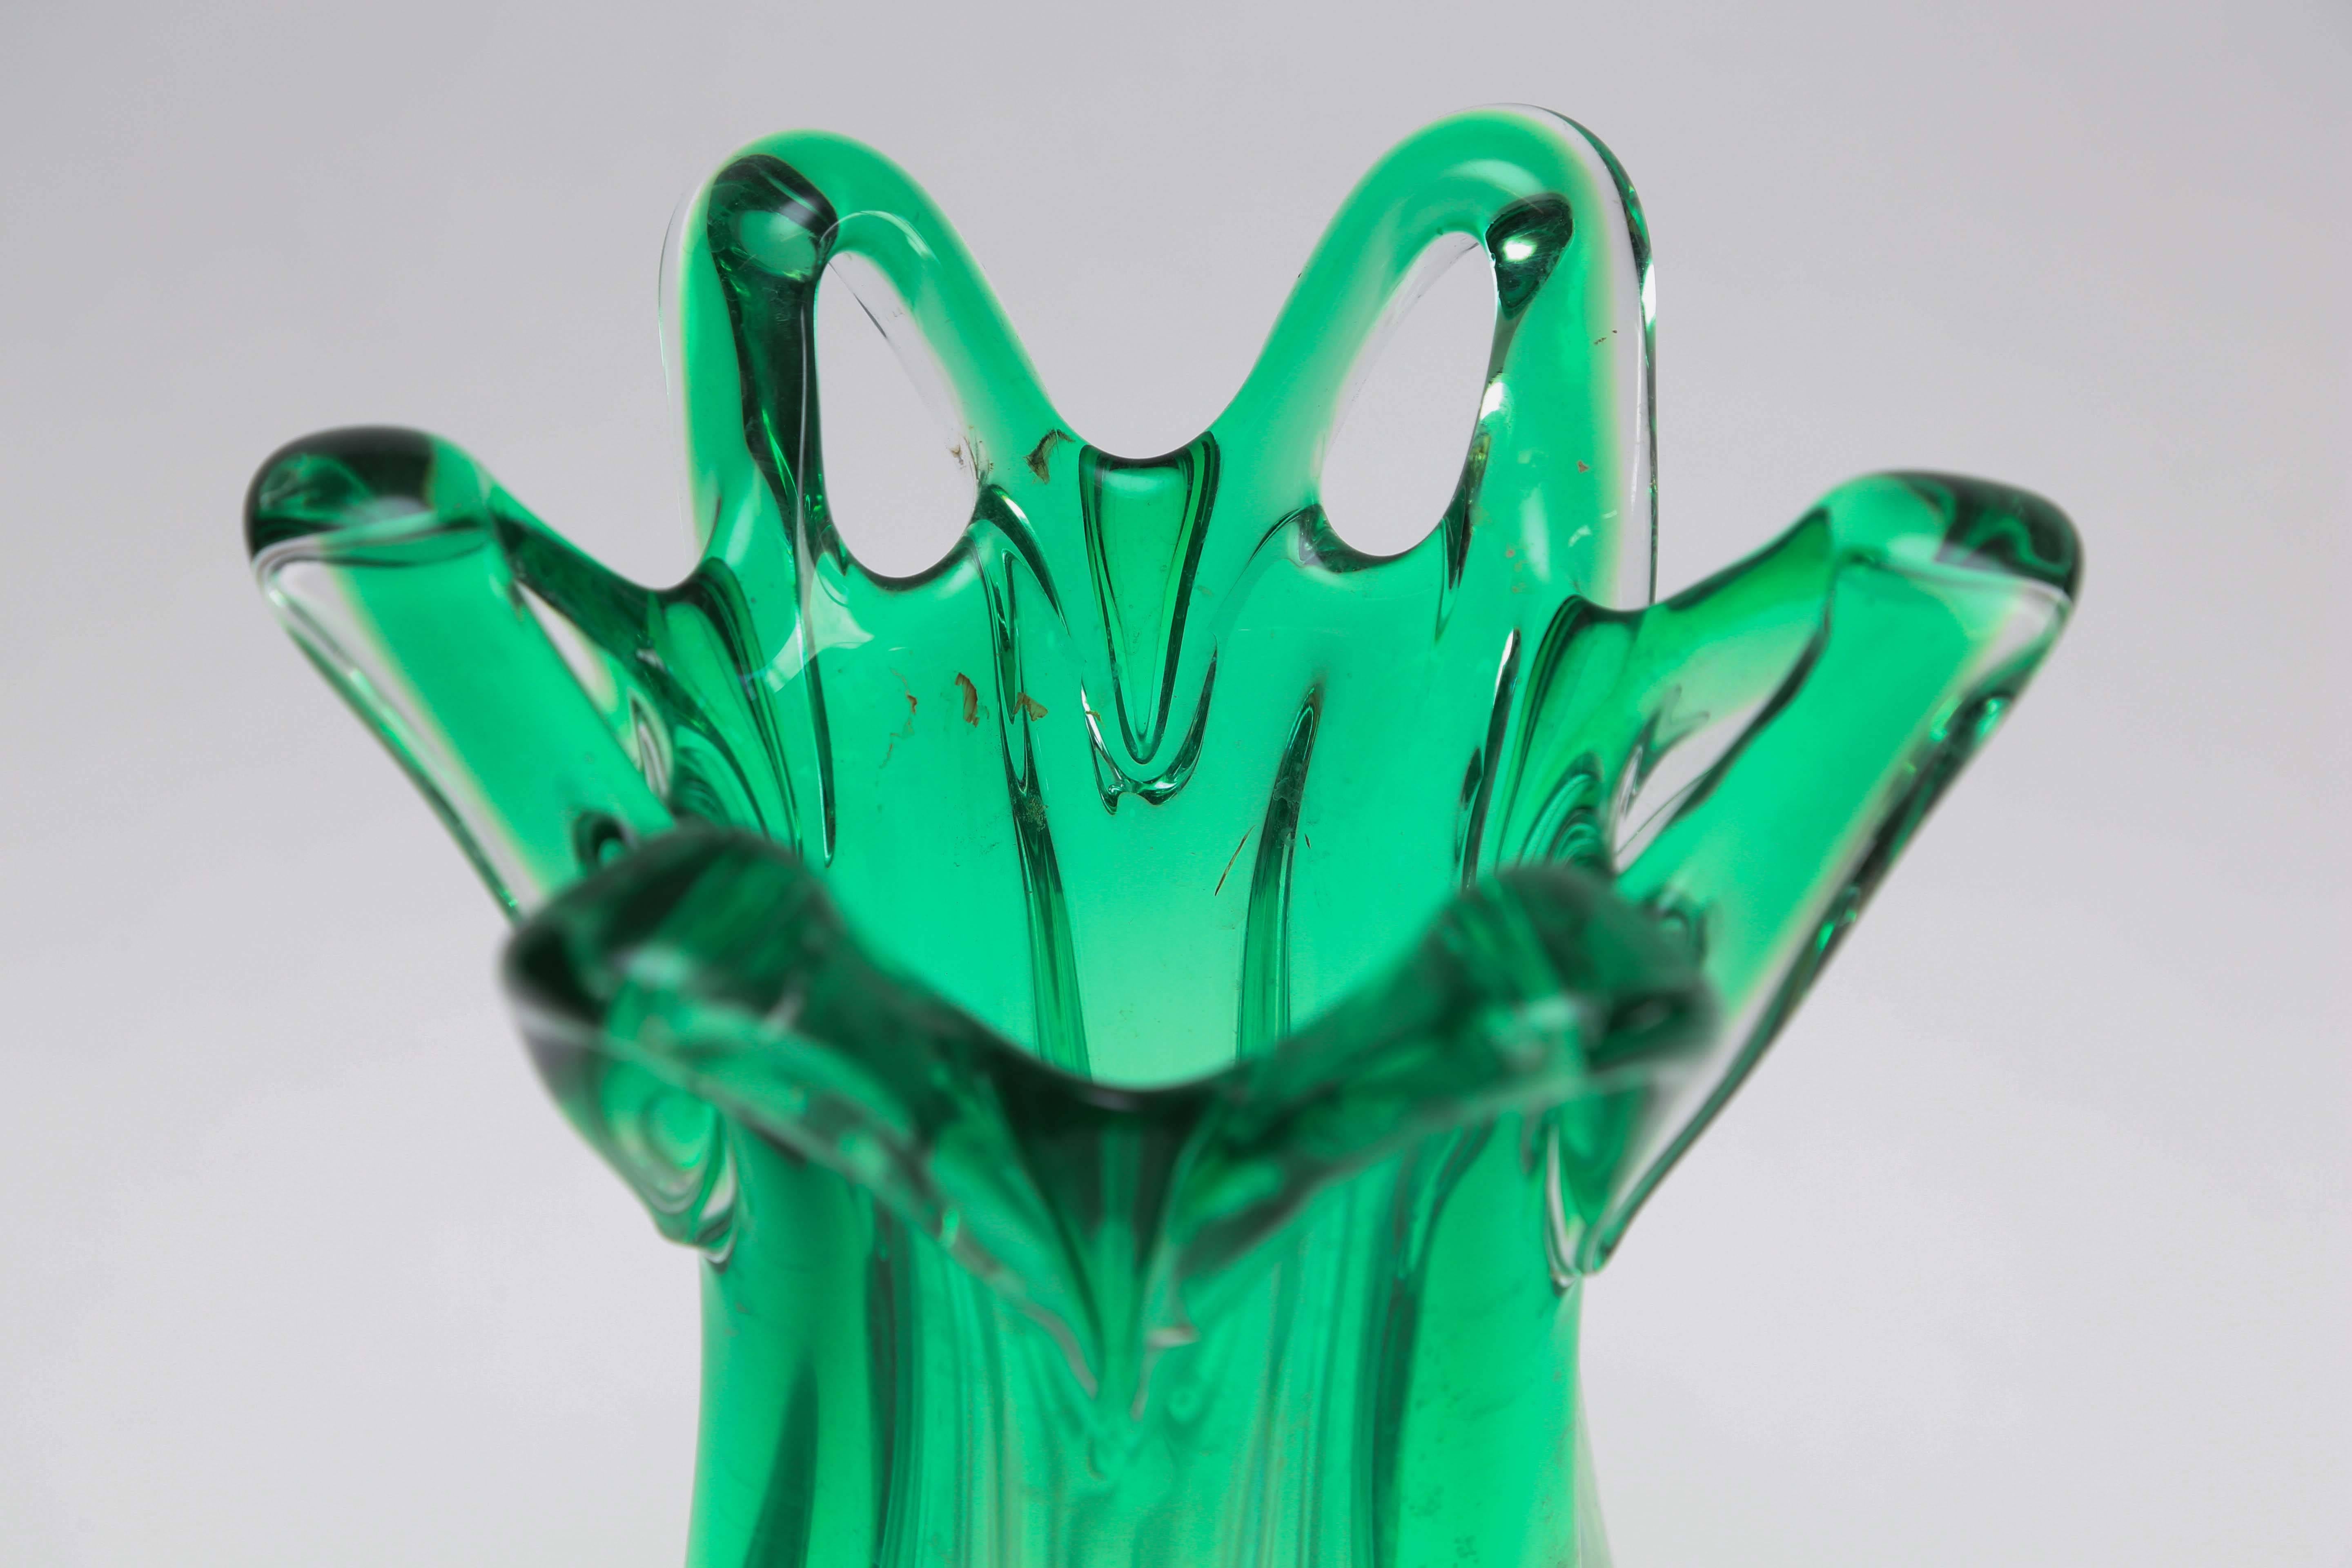 Magnifique vase en verre de Murano vert à effet d'ombre, datant des années 1960, Italie.